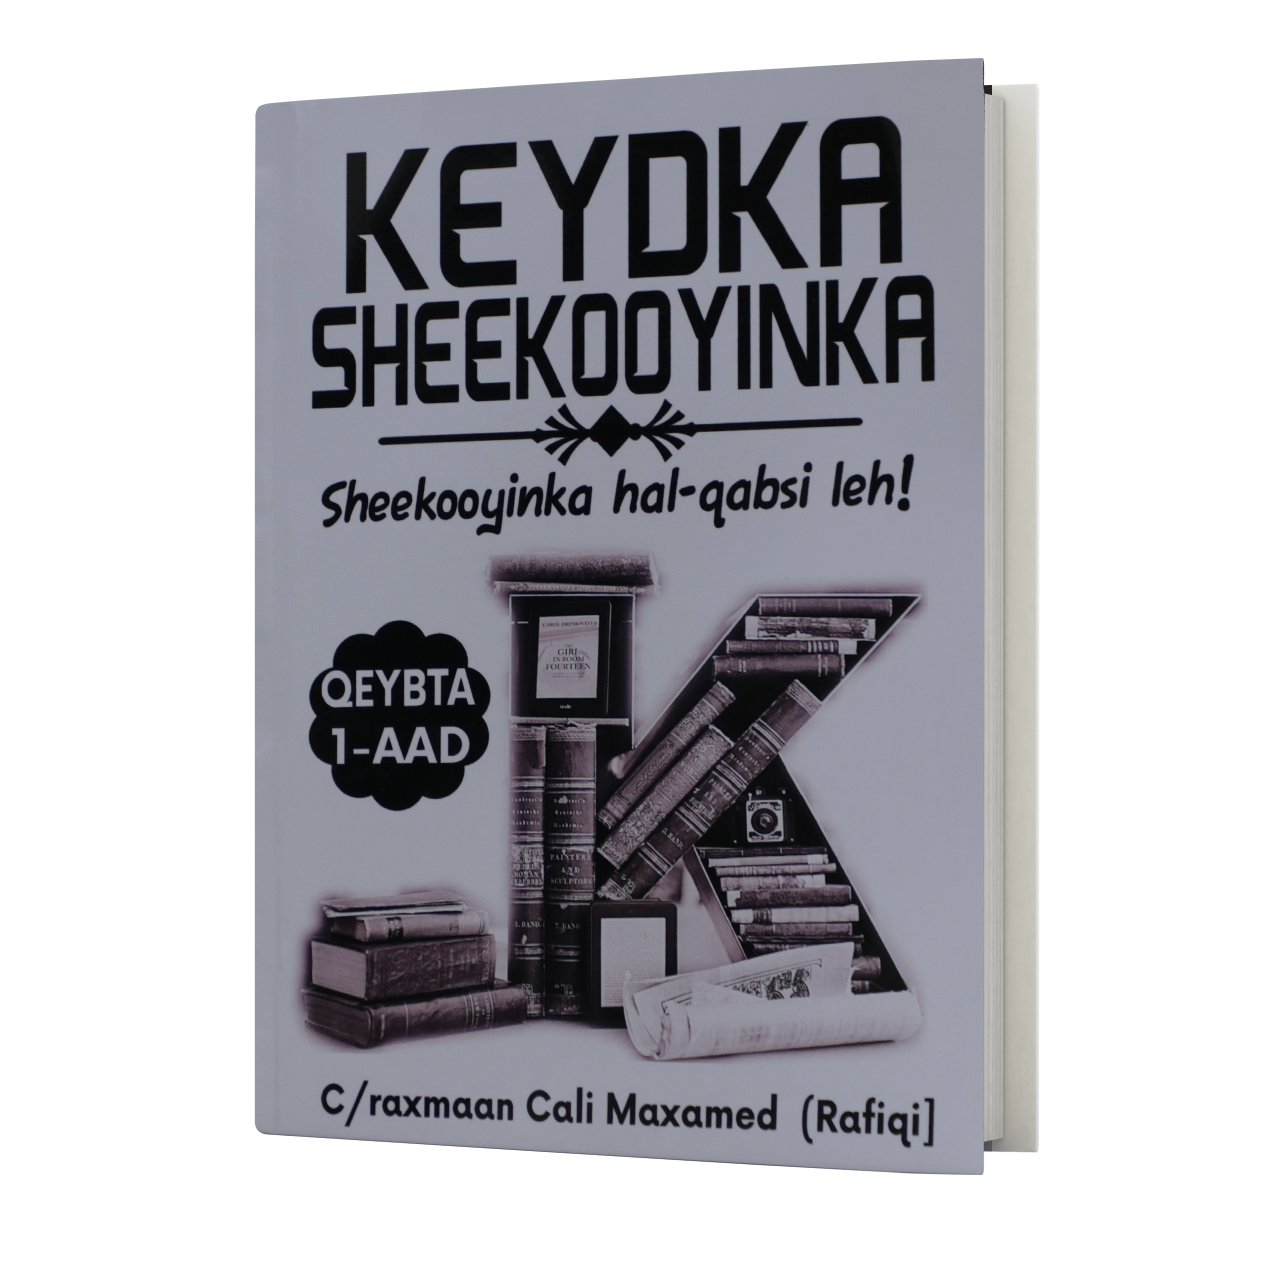 Keydka Sheekooyinka